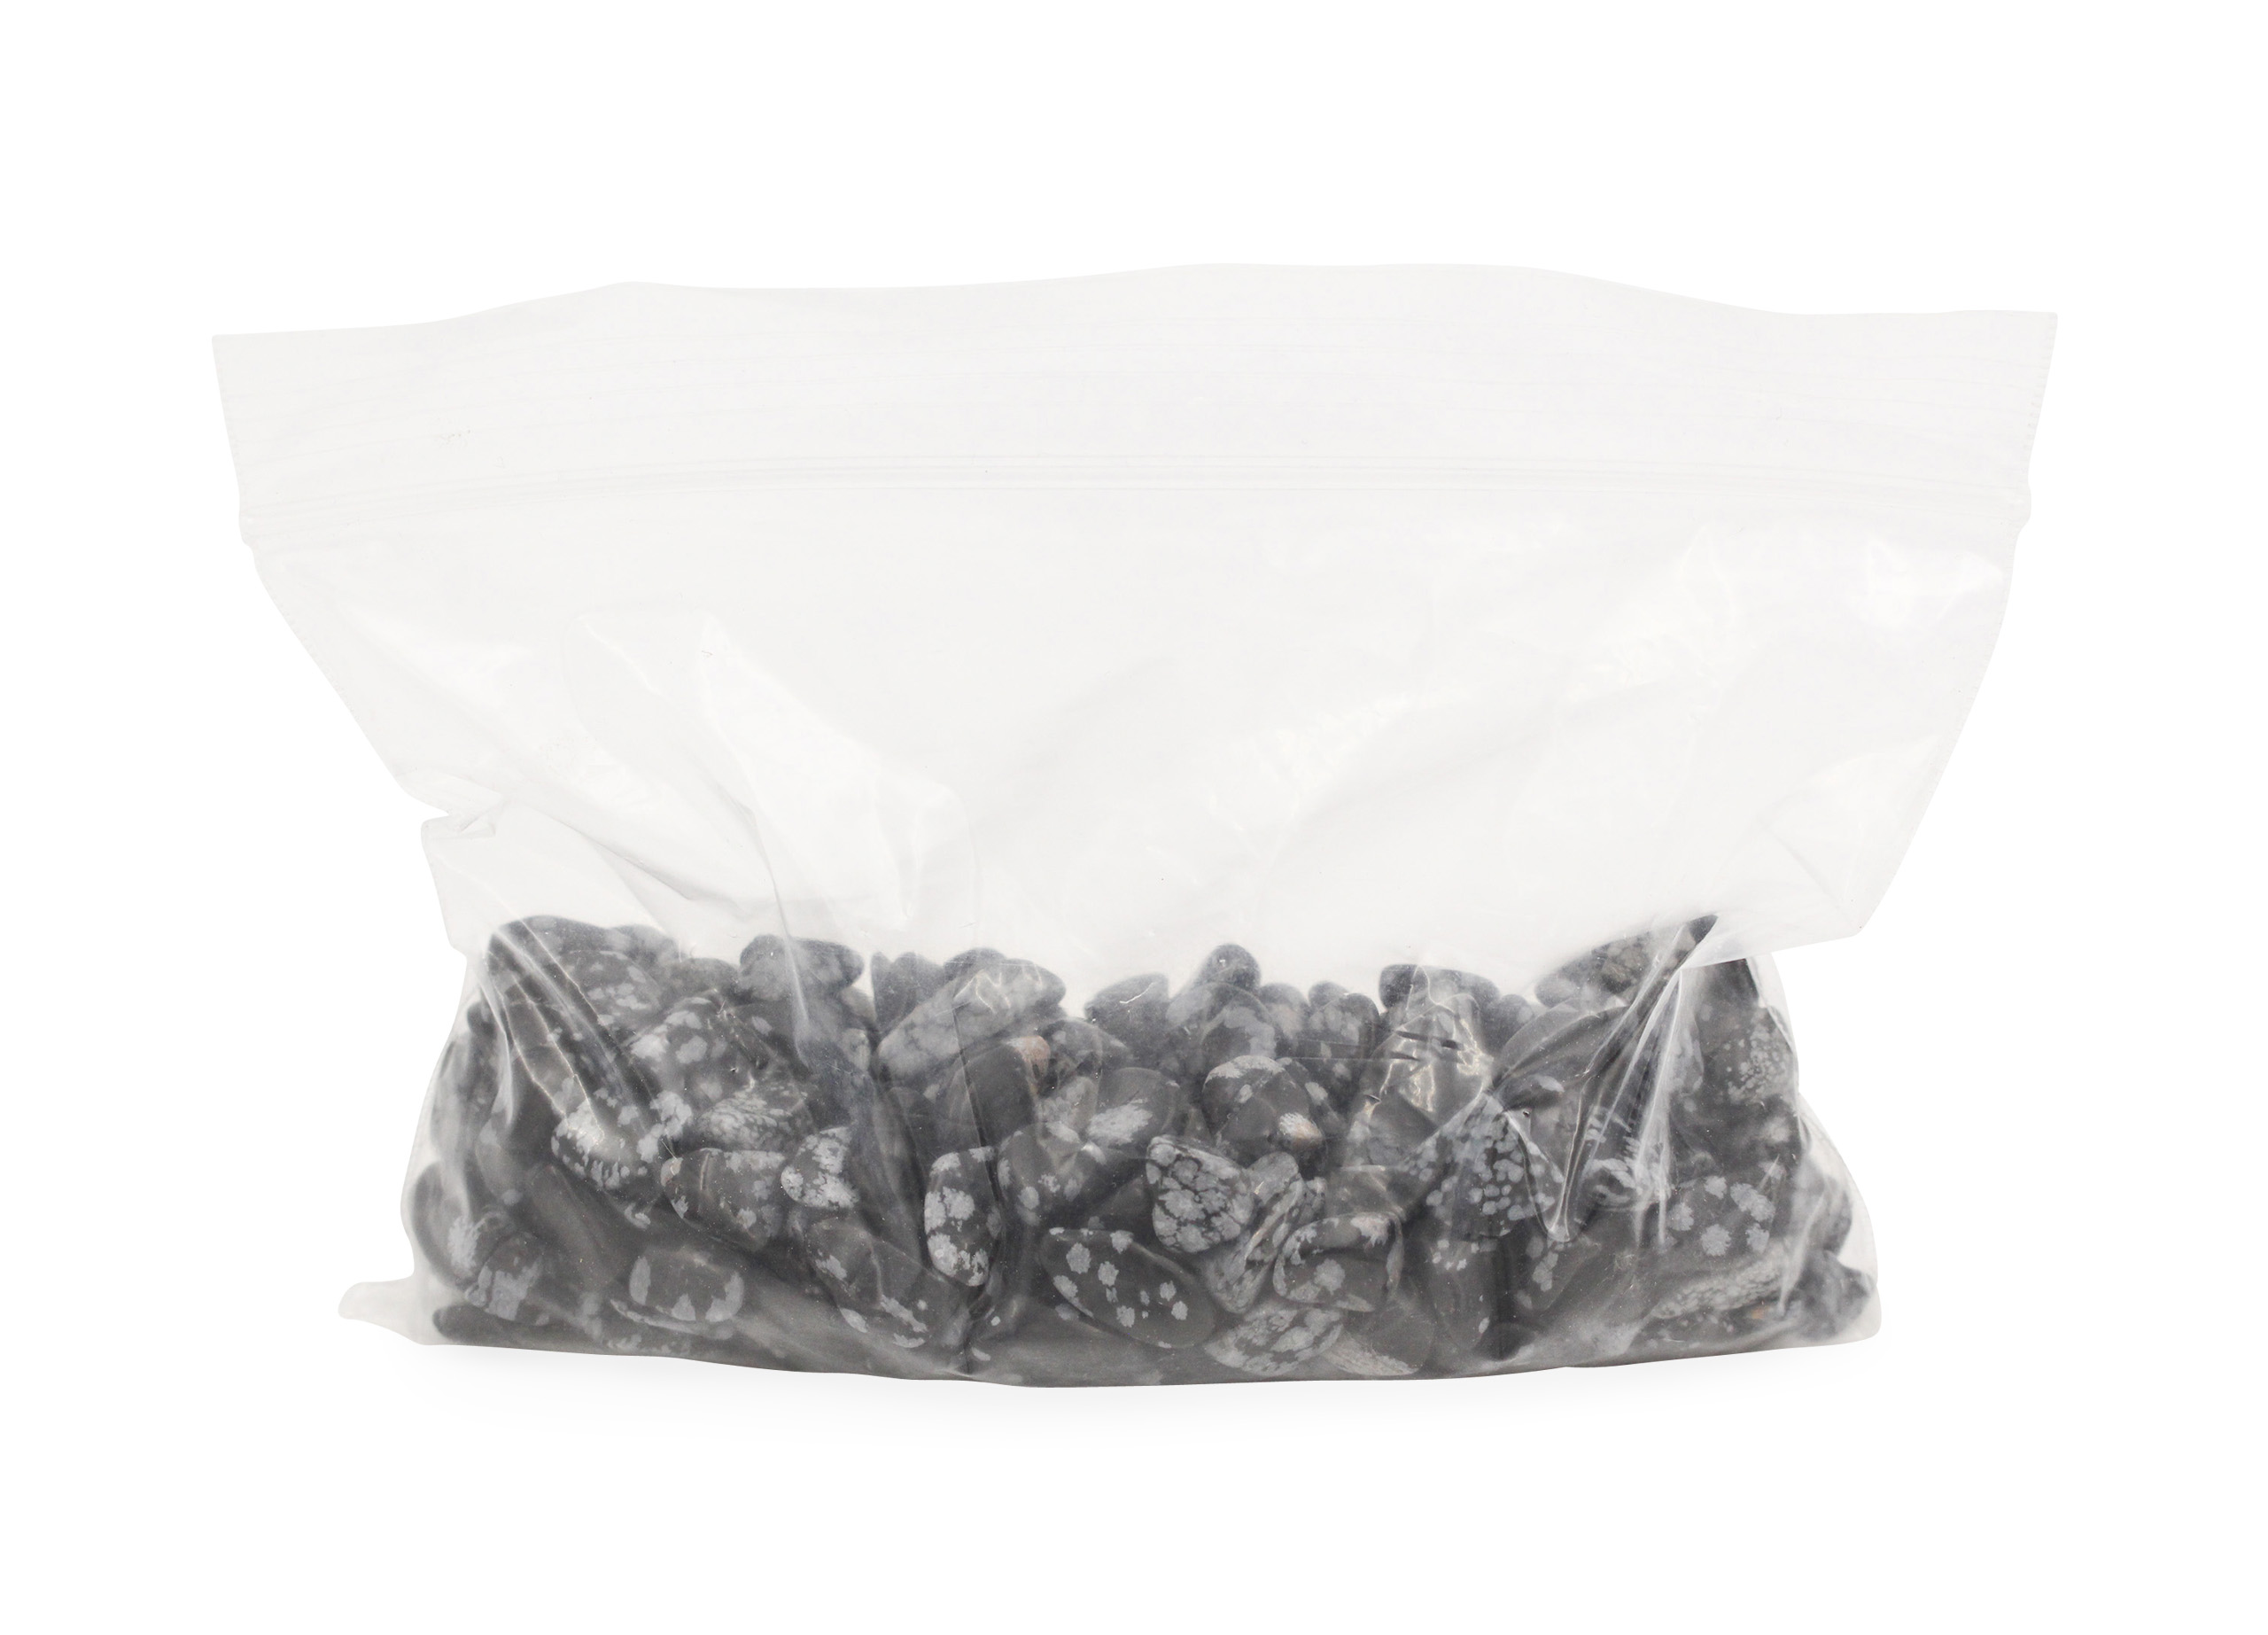 Snowflake Obsidian - Tiny Crystals Bag - Crystal Dreams